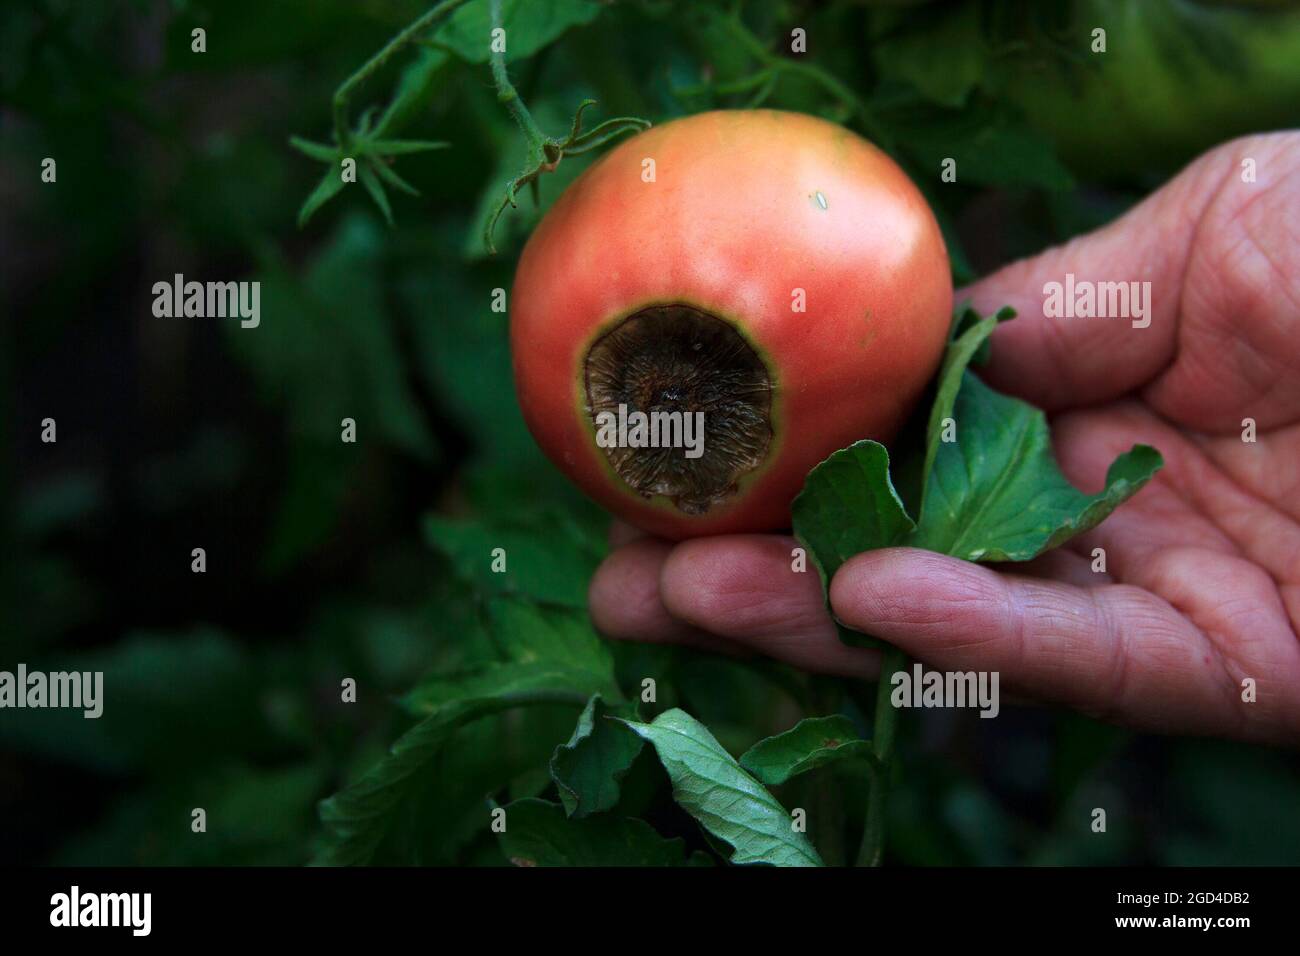 Krankheit von Tomaten. Blütenende verfaulen auf der Frucht. Beschädigte rote Tomate in der Hand des Bauern. Nahaufnahme. Ernteprobleme. Verschwommener landwirtschaftlicher Hintergrund Stockfoto